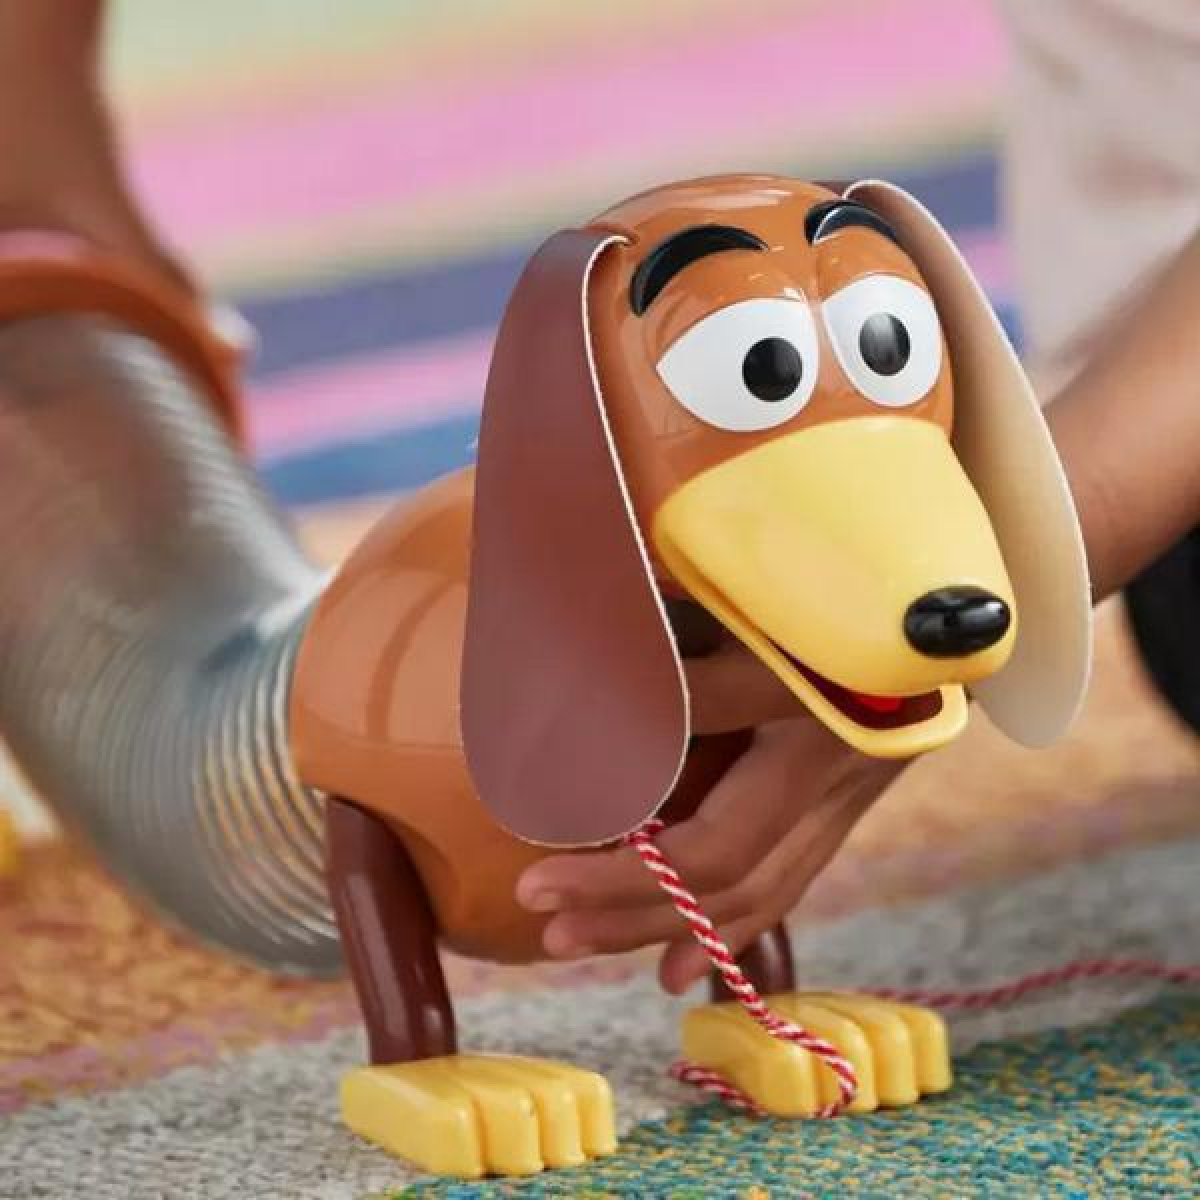 Σκυλάκι "Σούστας" Slinky Dog Interactive Talking Action Figure από το Toy Story, Με Ήχους (Αγγλικά) 17x27cm 3 Ετών+